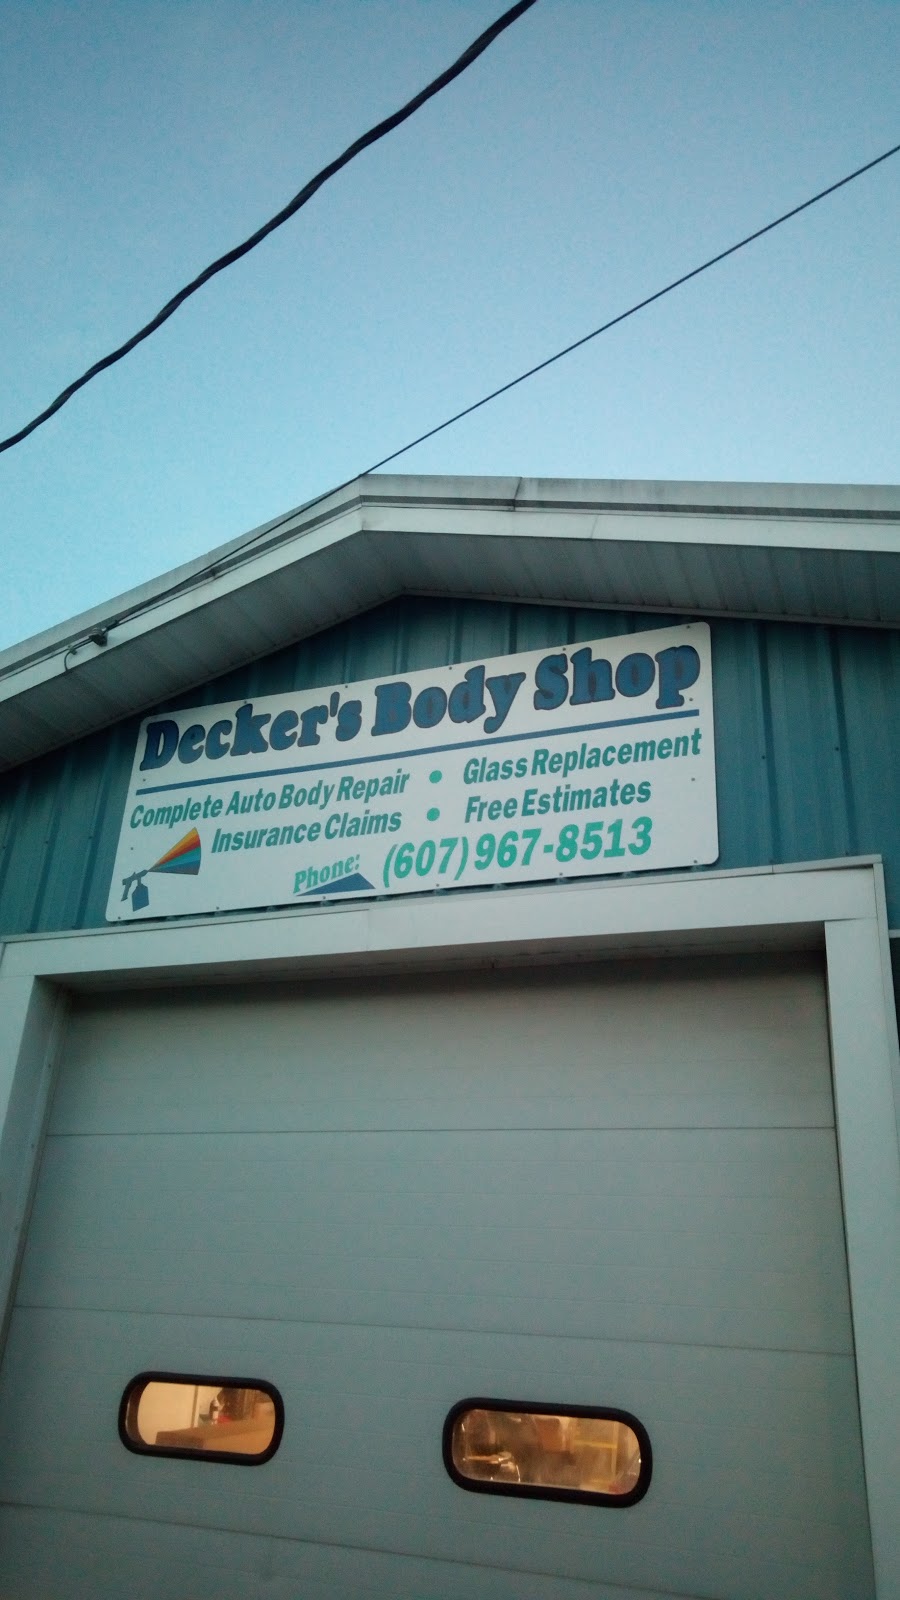 Deckers Body Shop | 3 Walnut Ave, Bainbridge, NY 13733 | Phone: (607) 967-8513